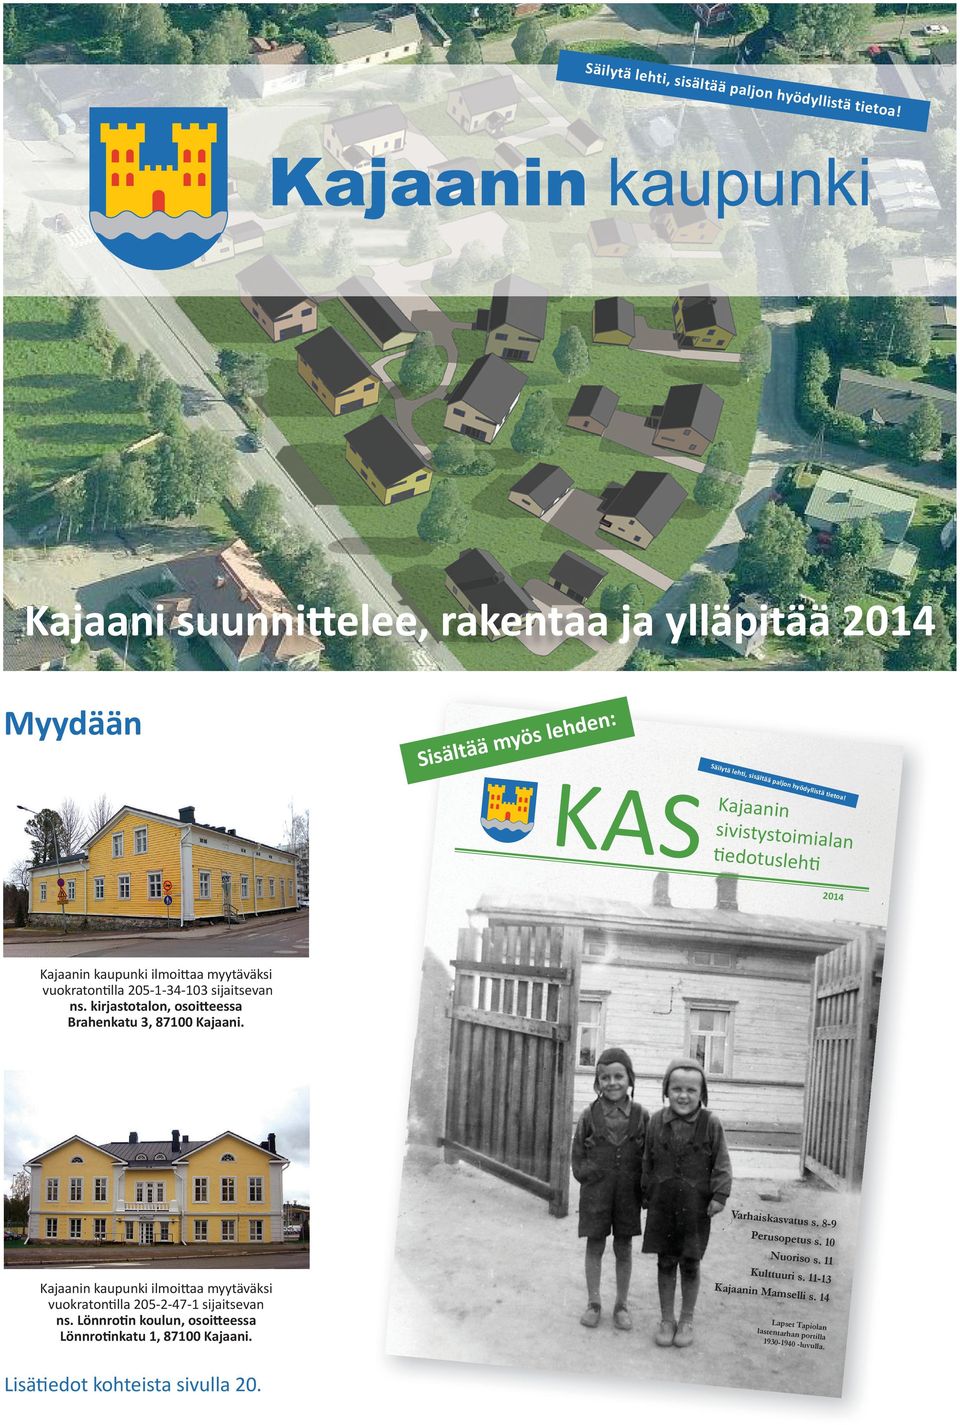 Kajaanin sivistystoimia lan Ɵ ĞĚŽƚƵƐůĞŚƟ 2014 Kajaanin kaupunki ilmoiʃaa myytäväksi vuokratonɵlla 205-1-34-103 sijaitsevan ns.